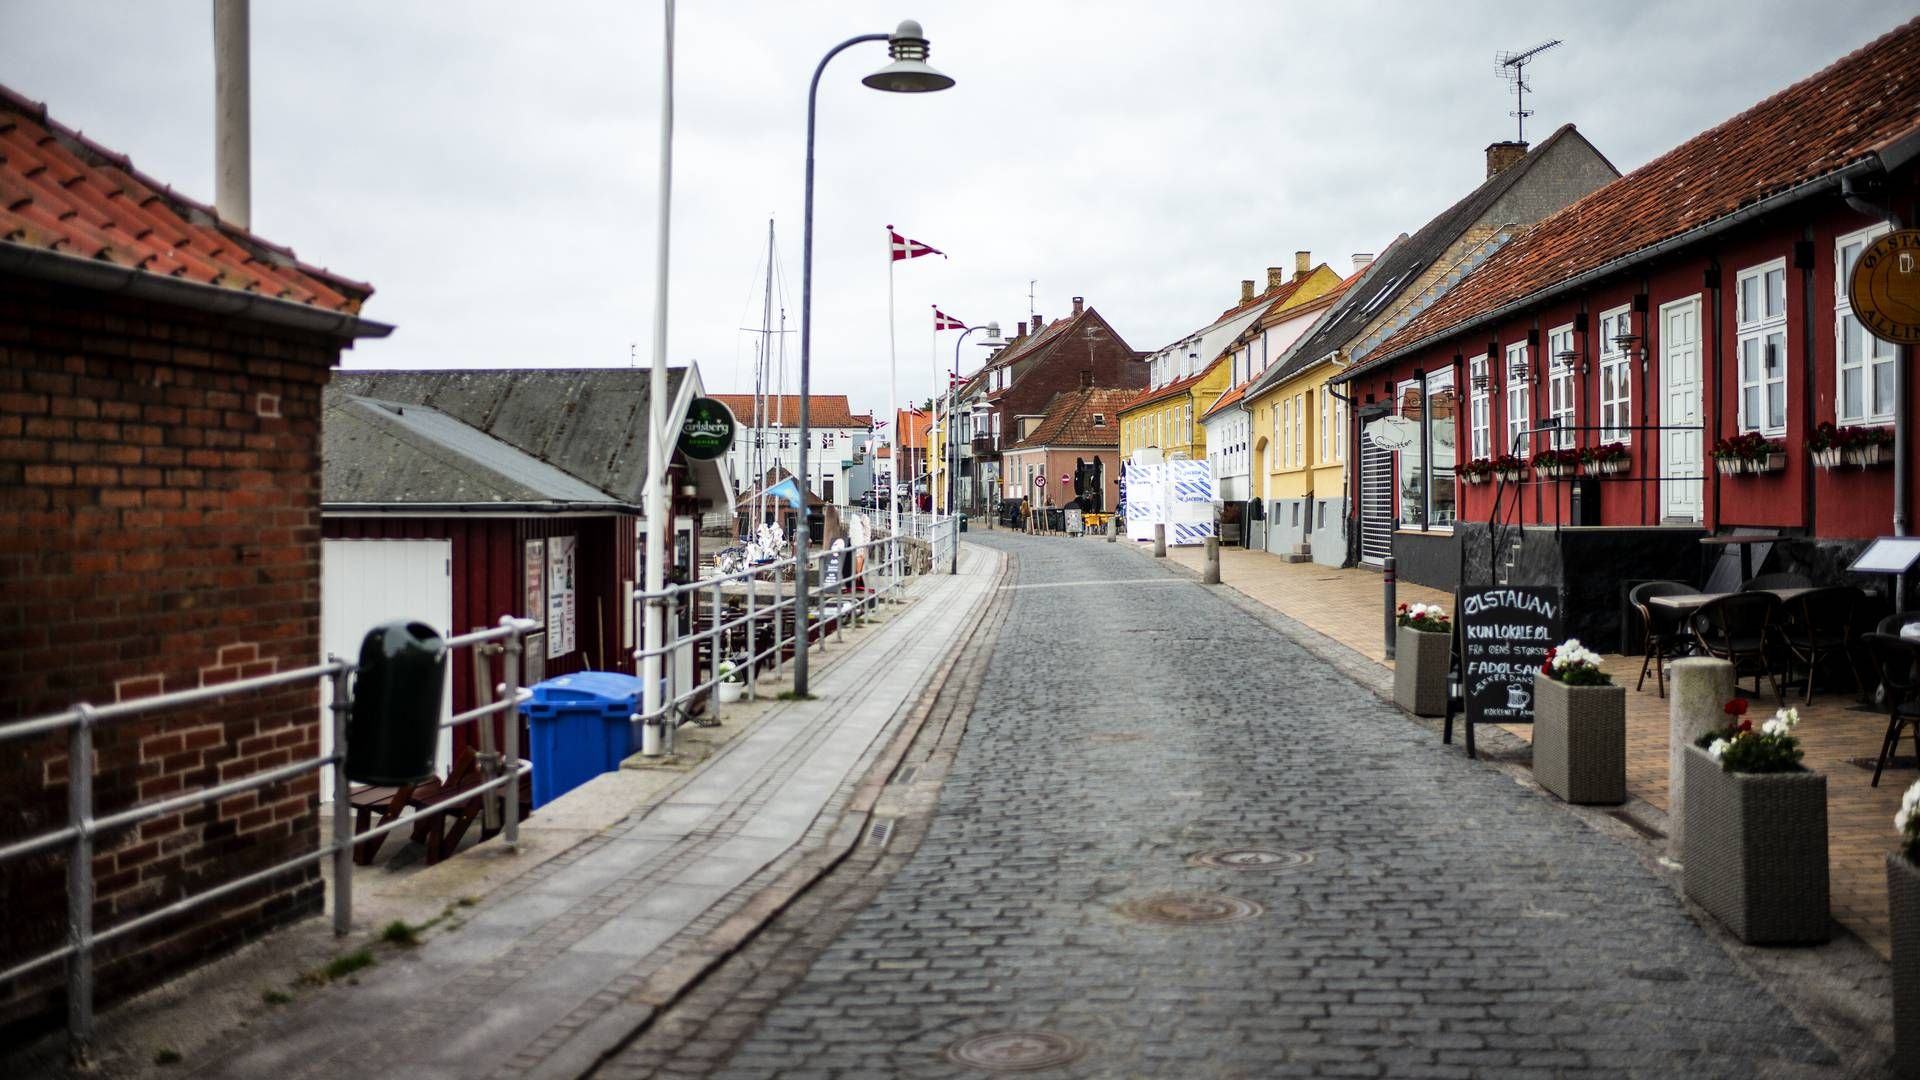 Trods frasalget af hotellet i Allinge, vil Altinget også de kommende år indtage Grønbechs Hotel under Folkemødet efter aftale med de nye ejere. | Foto: Rasmus Flindt Pedersen / Ritzau Scanpix